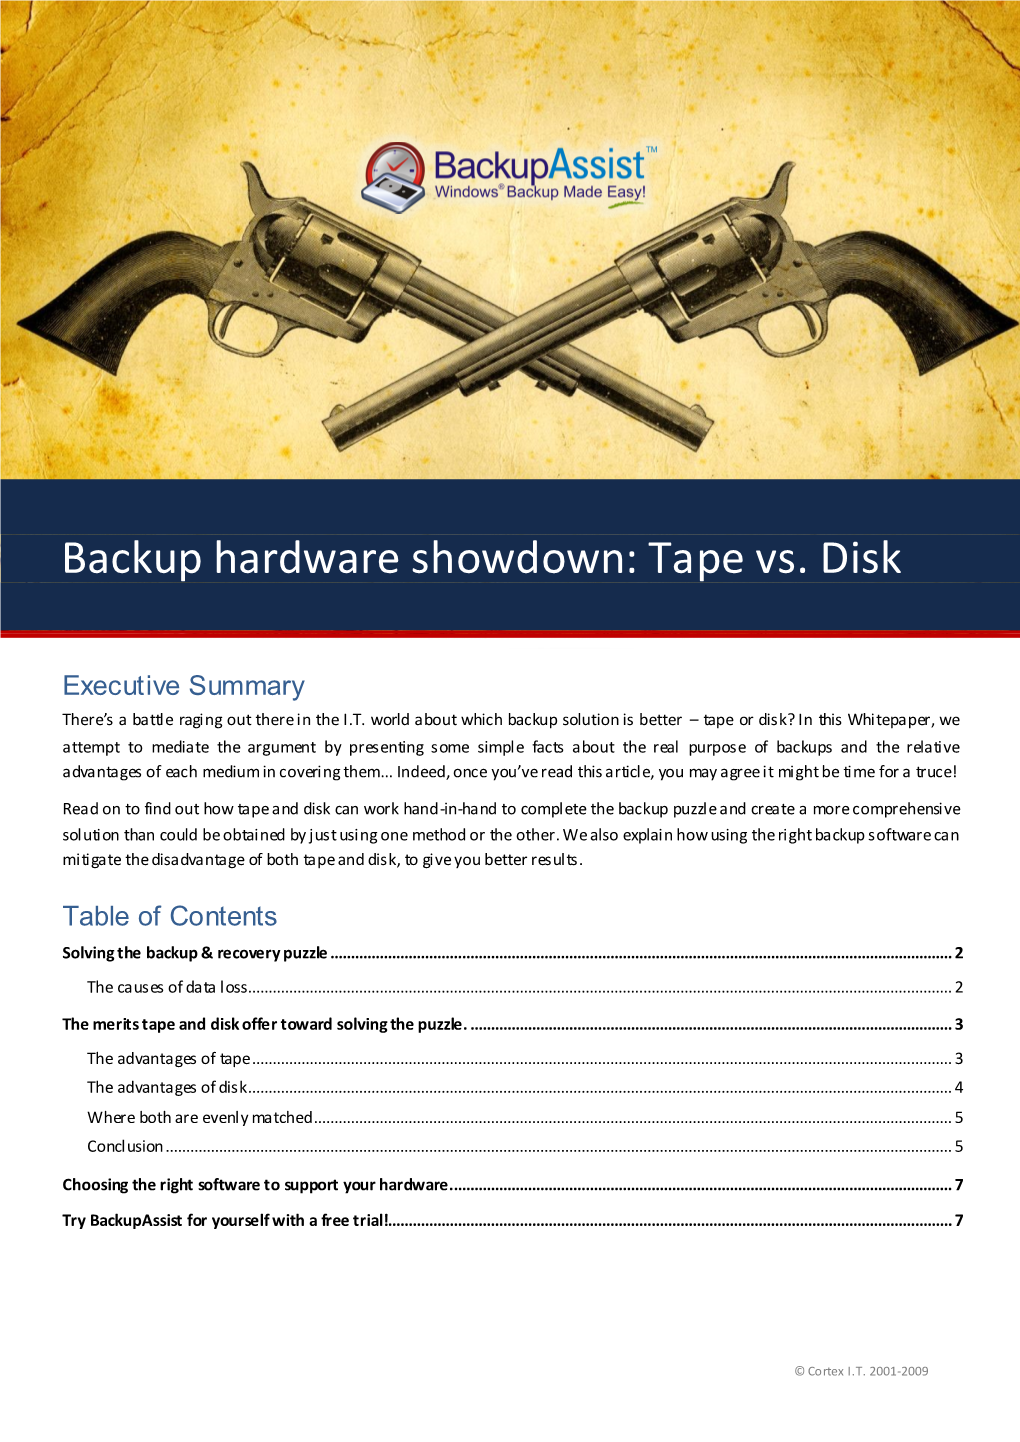 Backup Hardware Showdown: Tape Vs. Disk